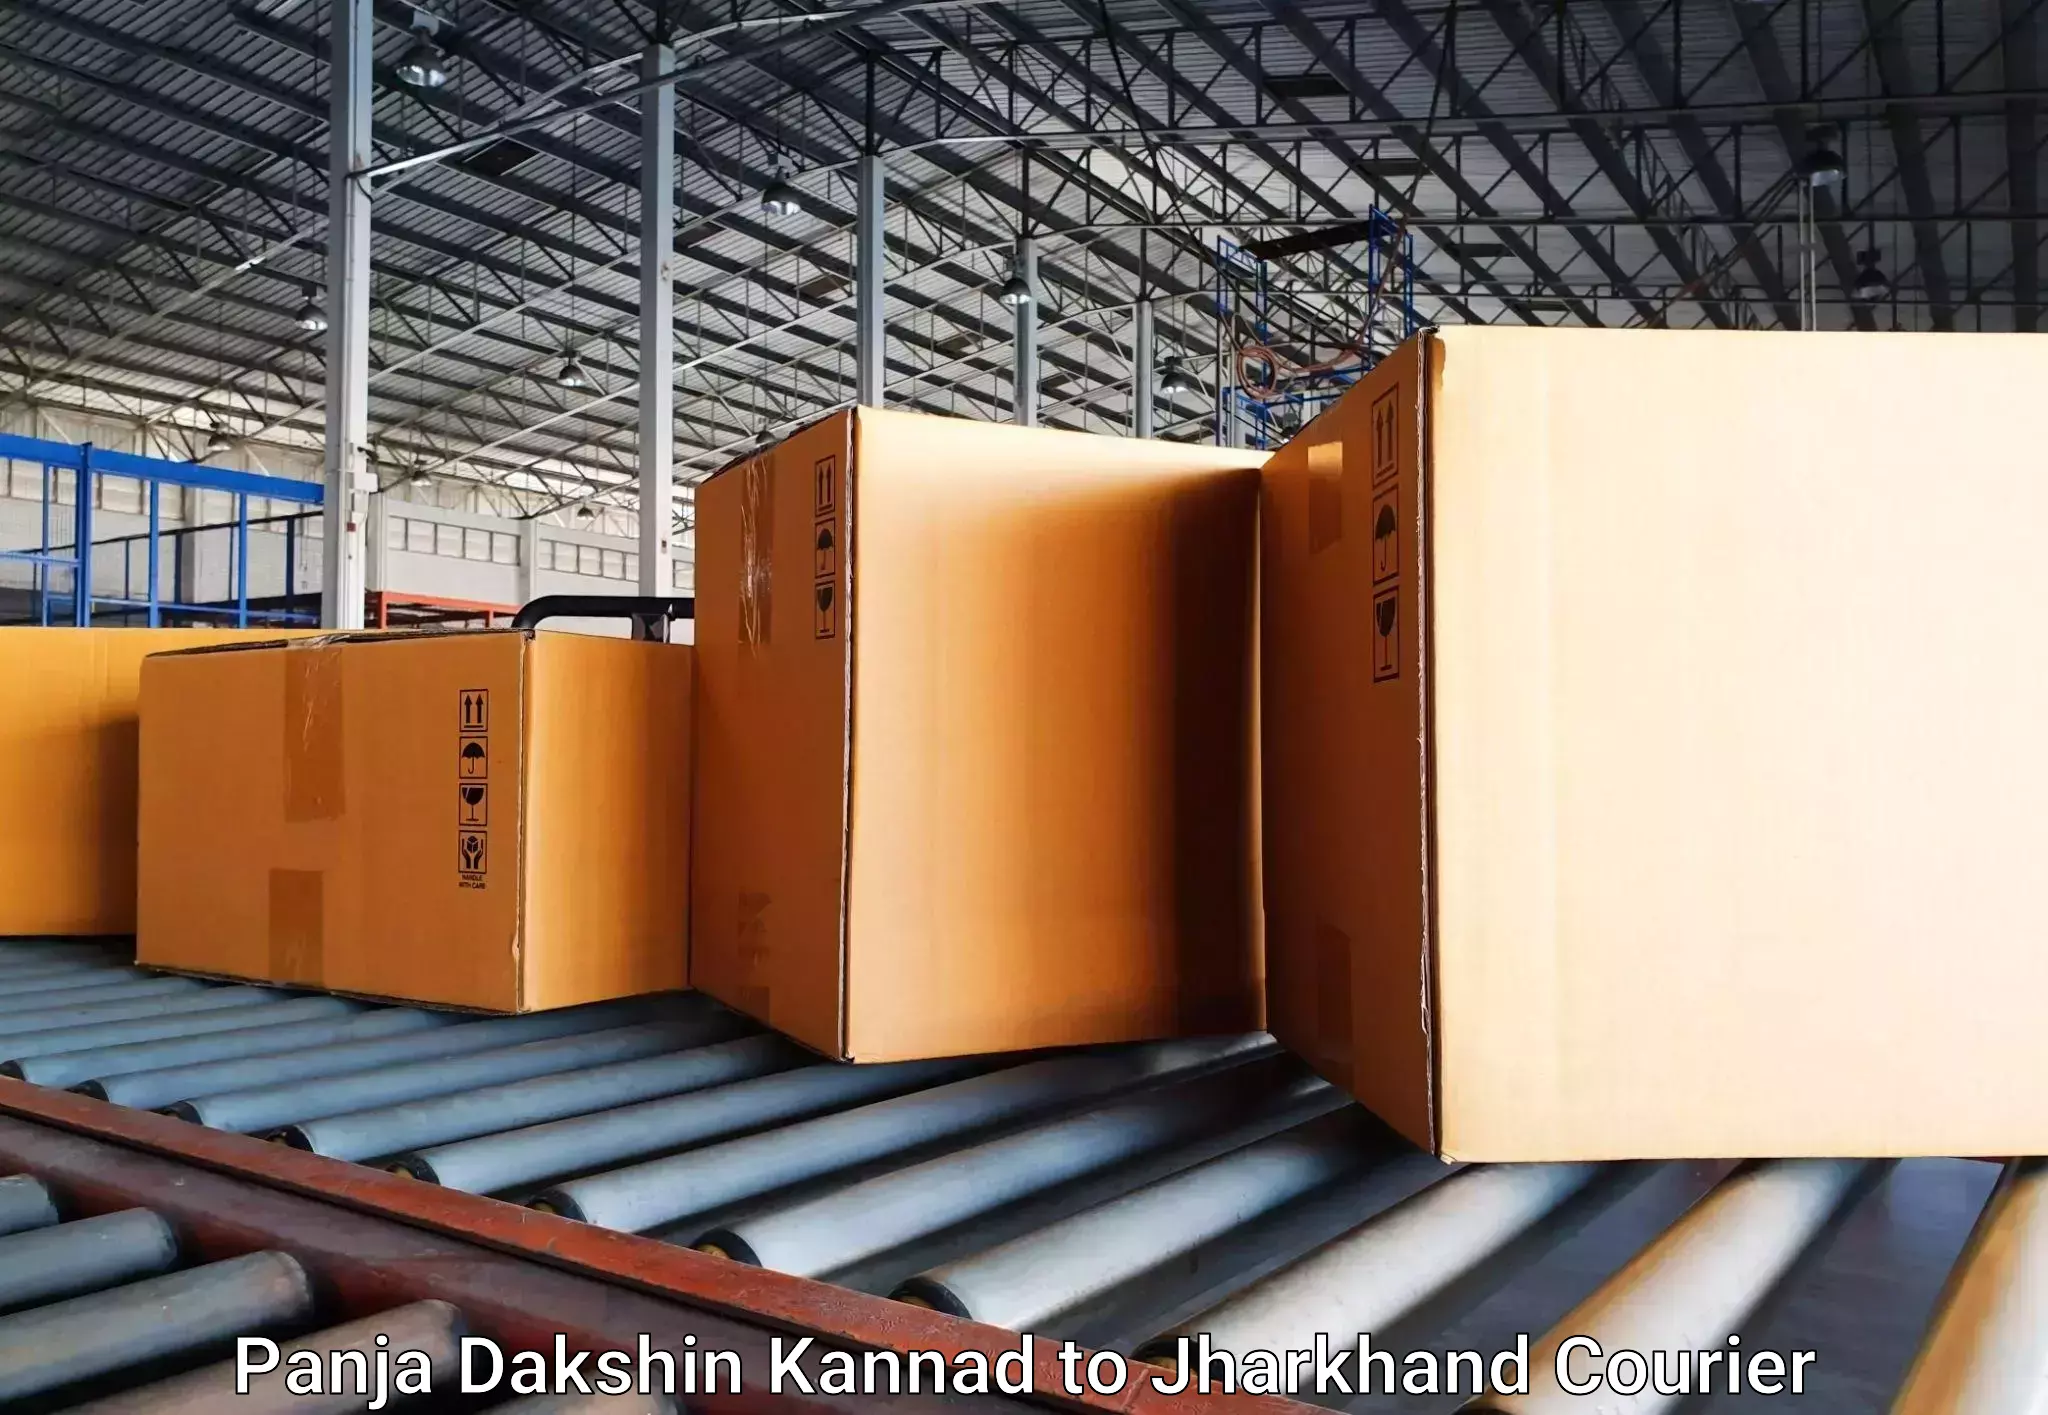 Baggage transport network Panja Dakshin Kannad to Shikaripara